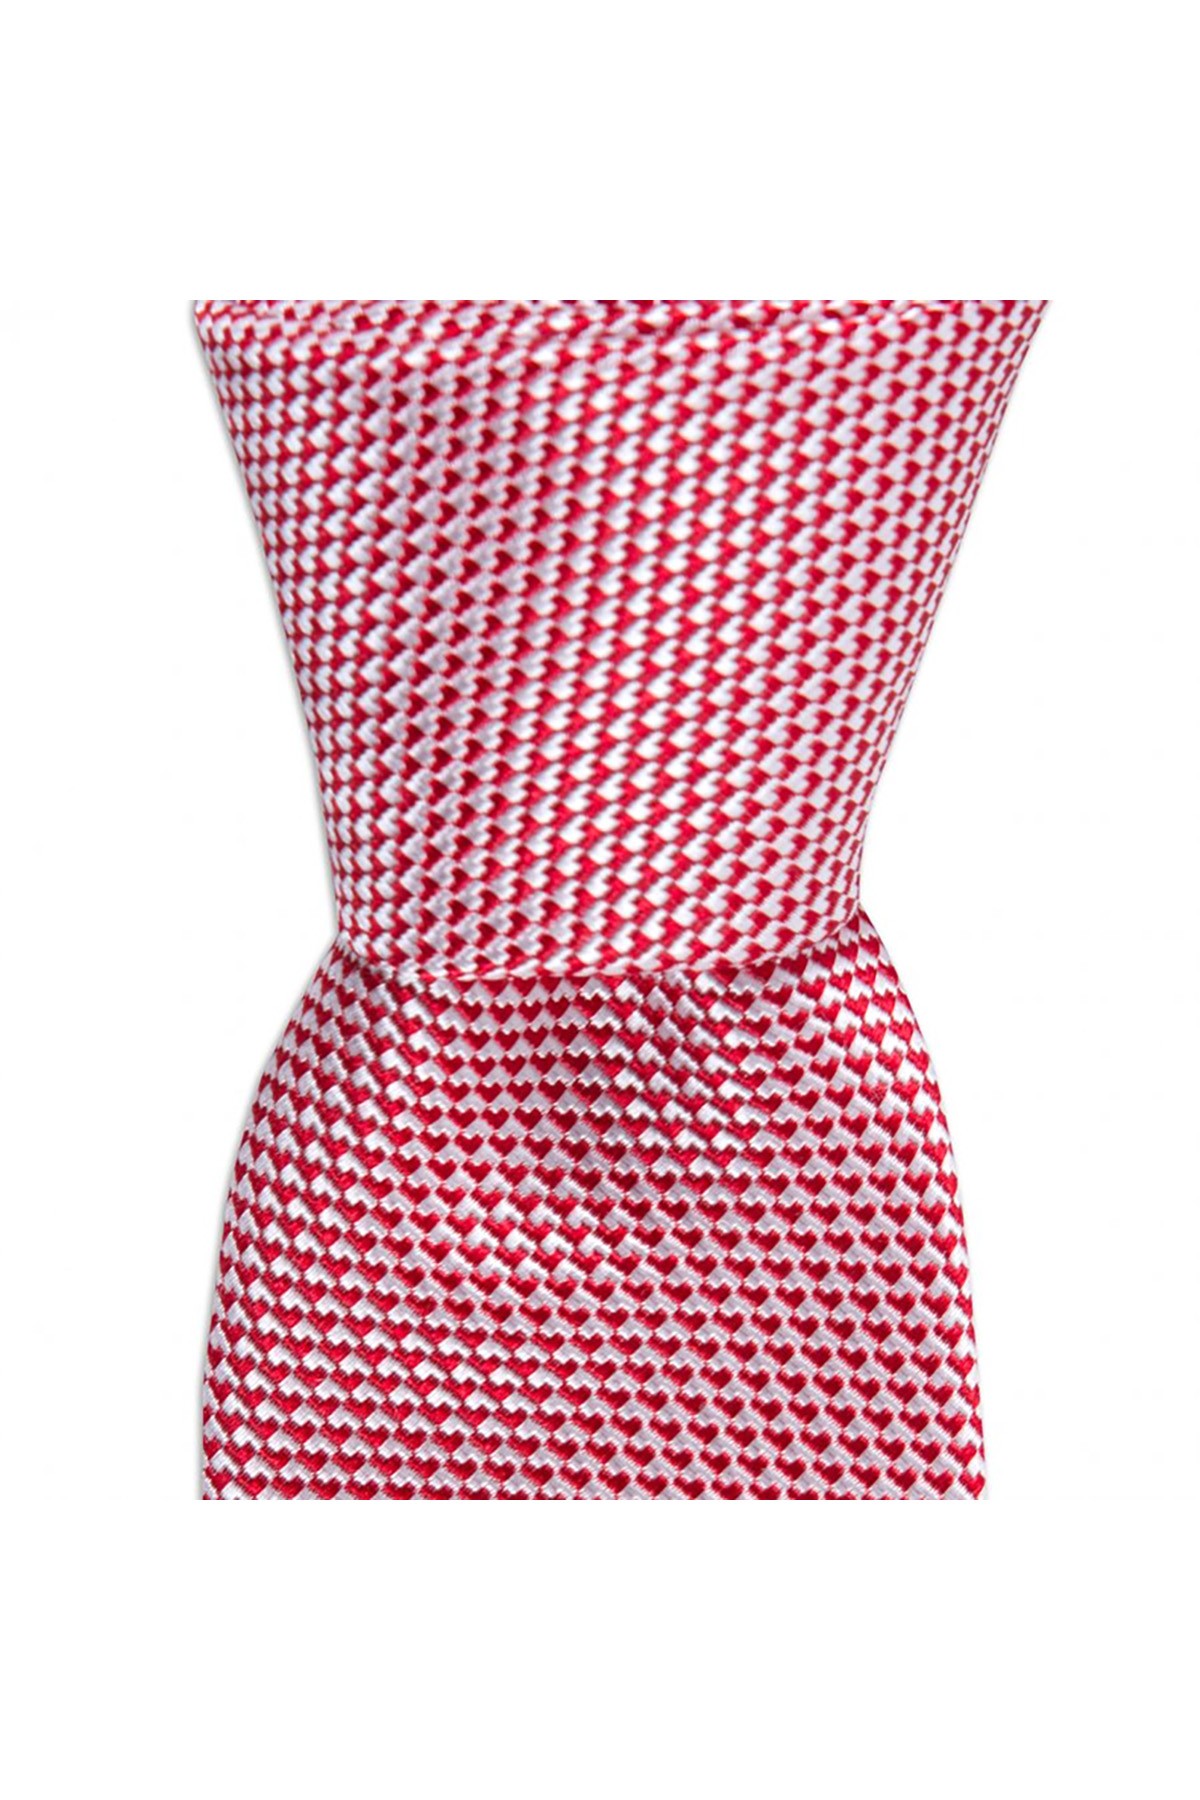 6 cm genişliğinde ince ipek kravat - Kırmızı